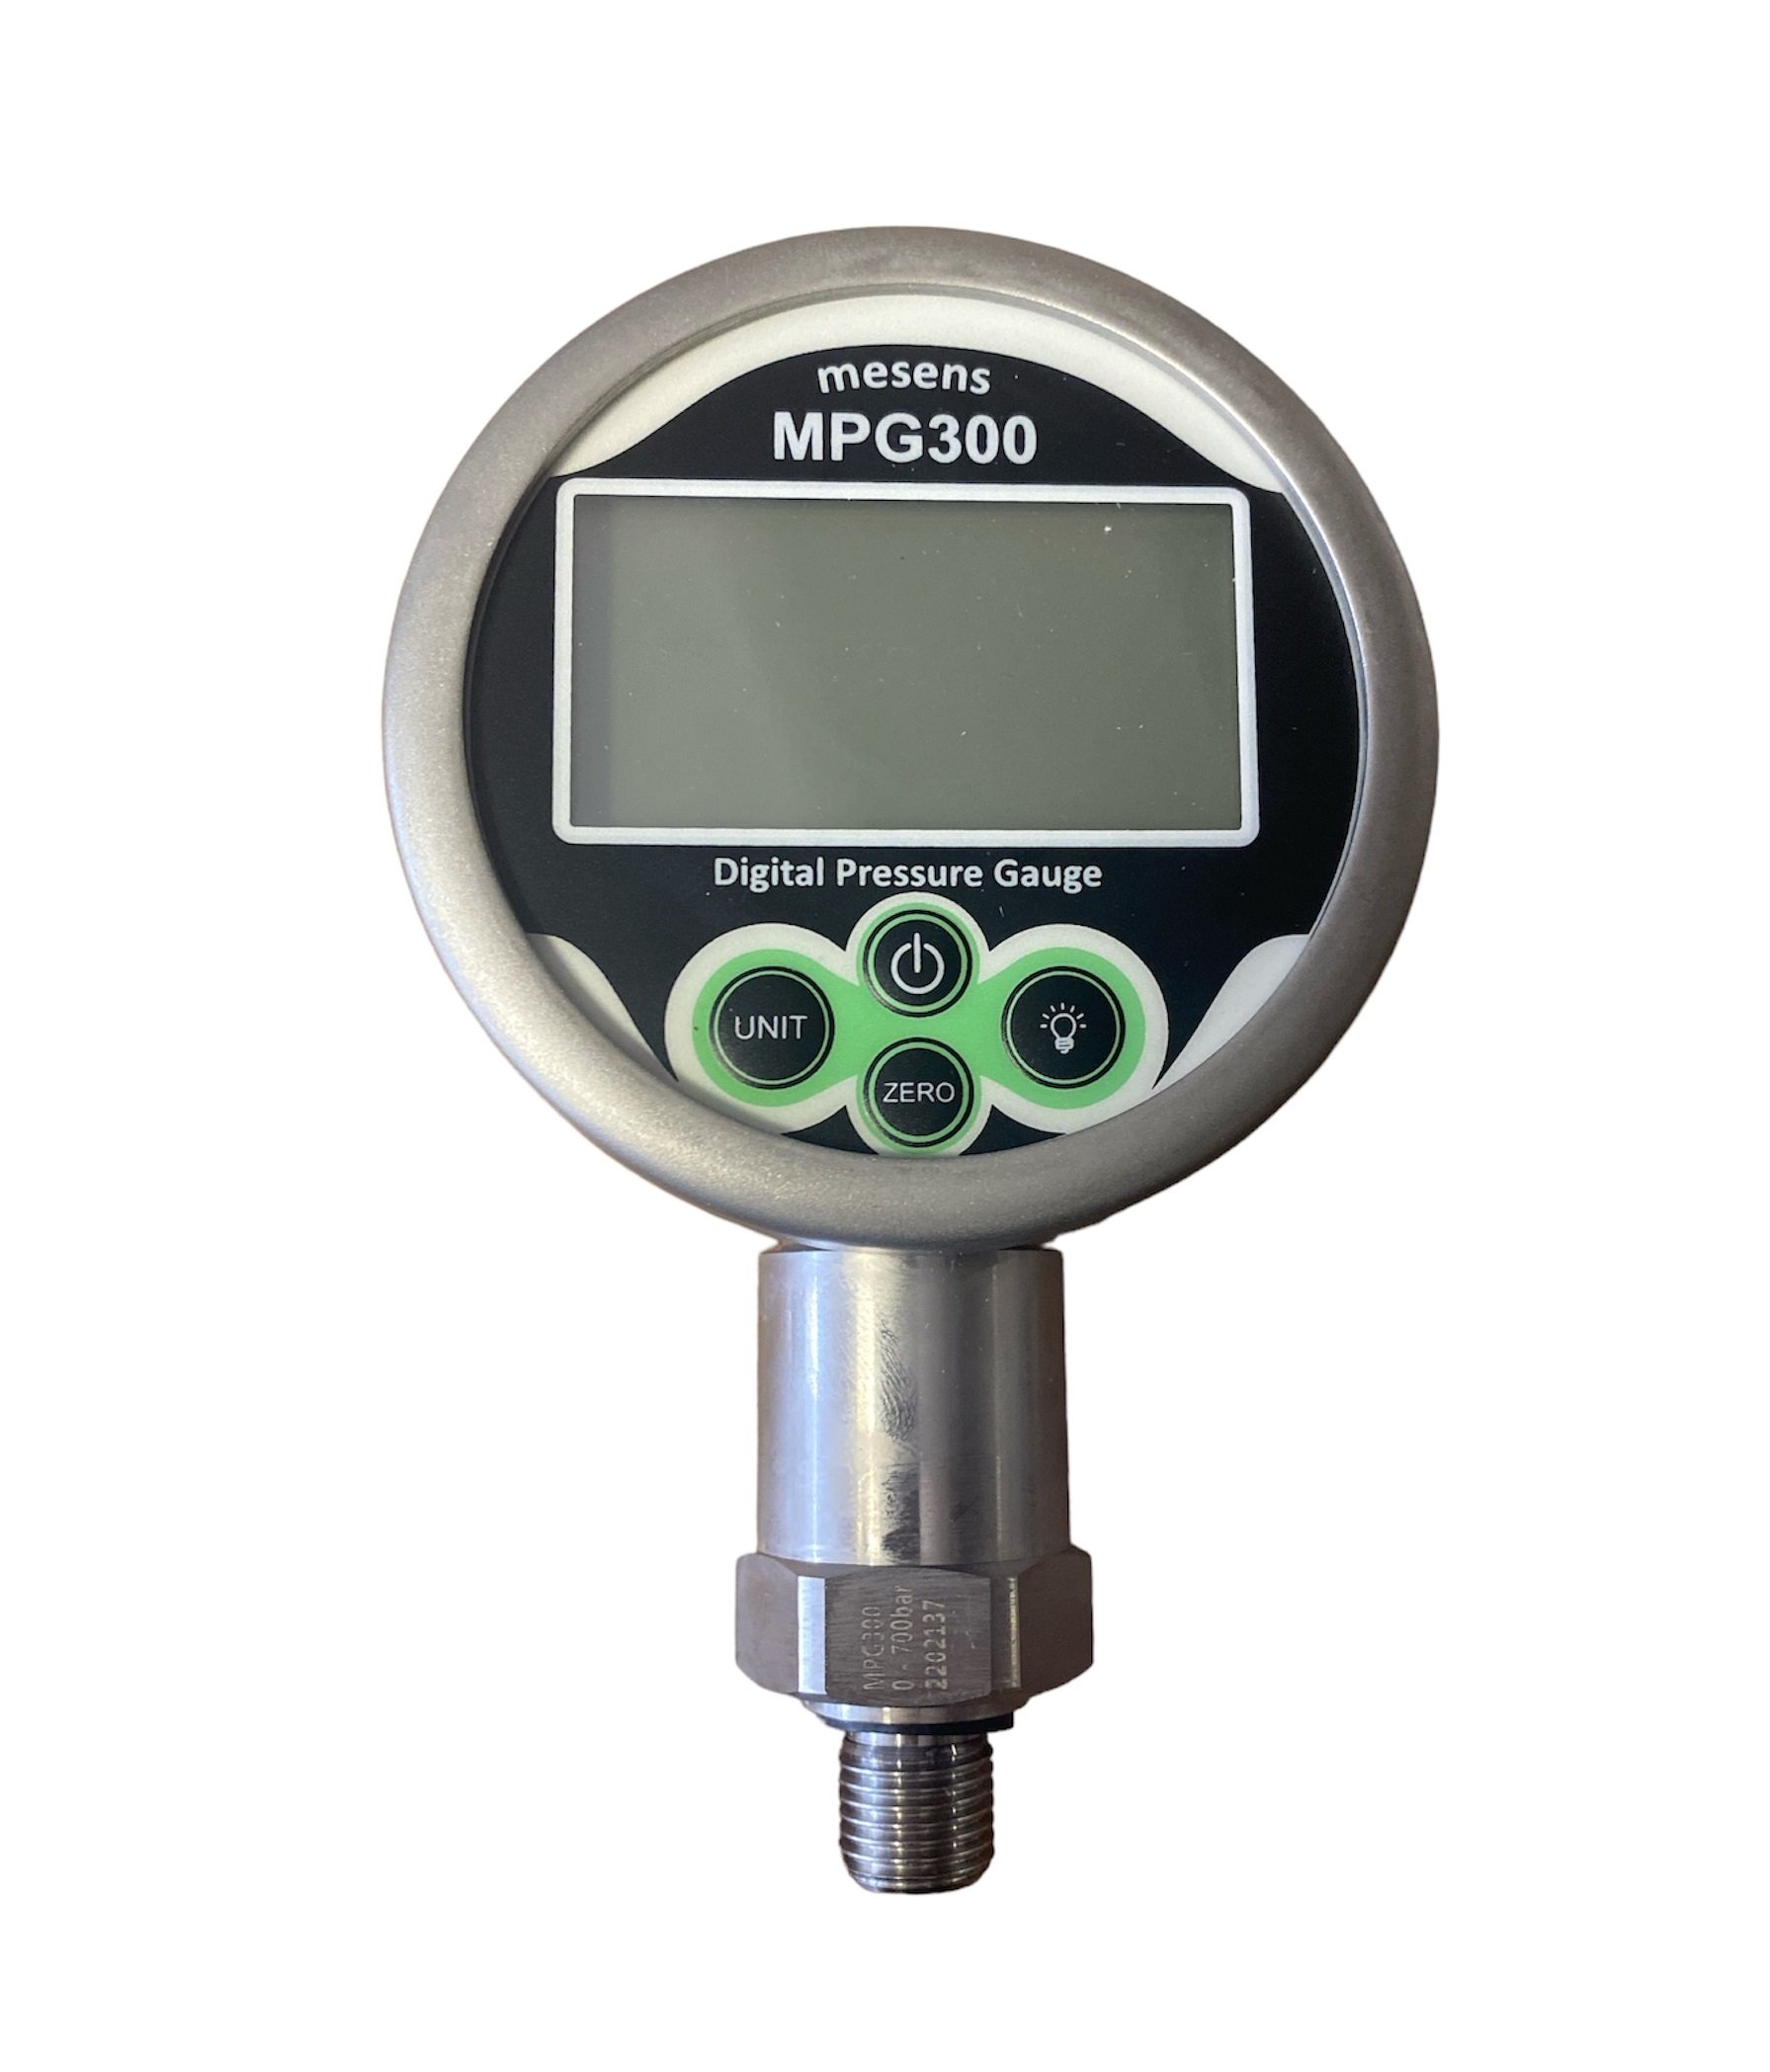 mpg300 dijital manometreler dijital basınç gösterge saatleri